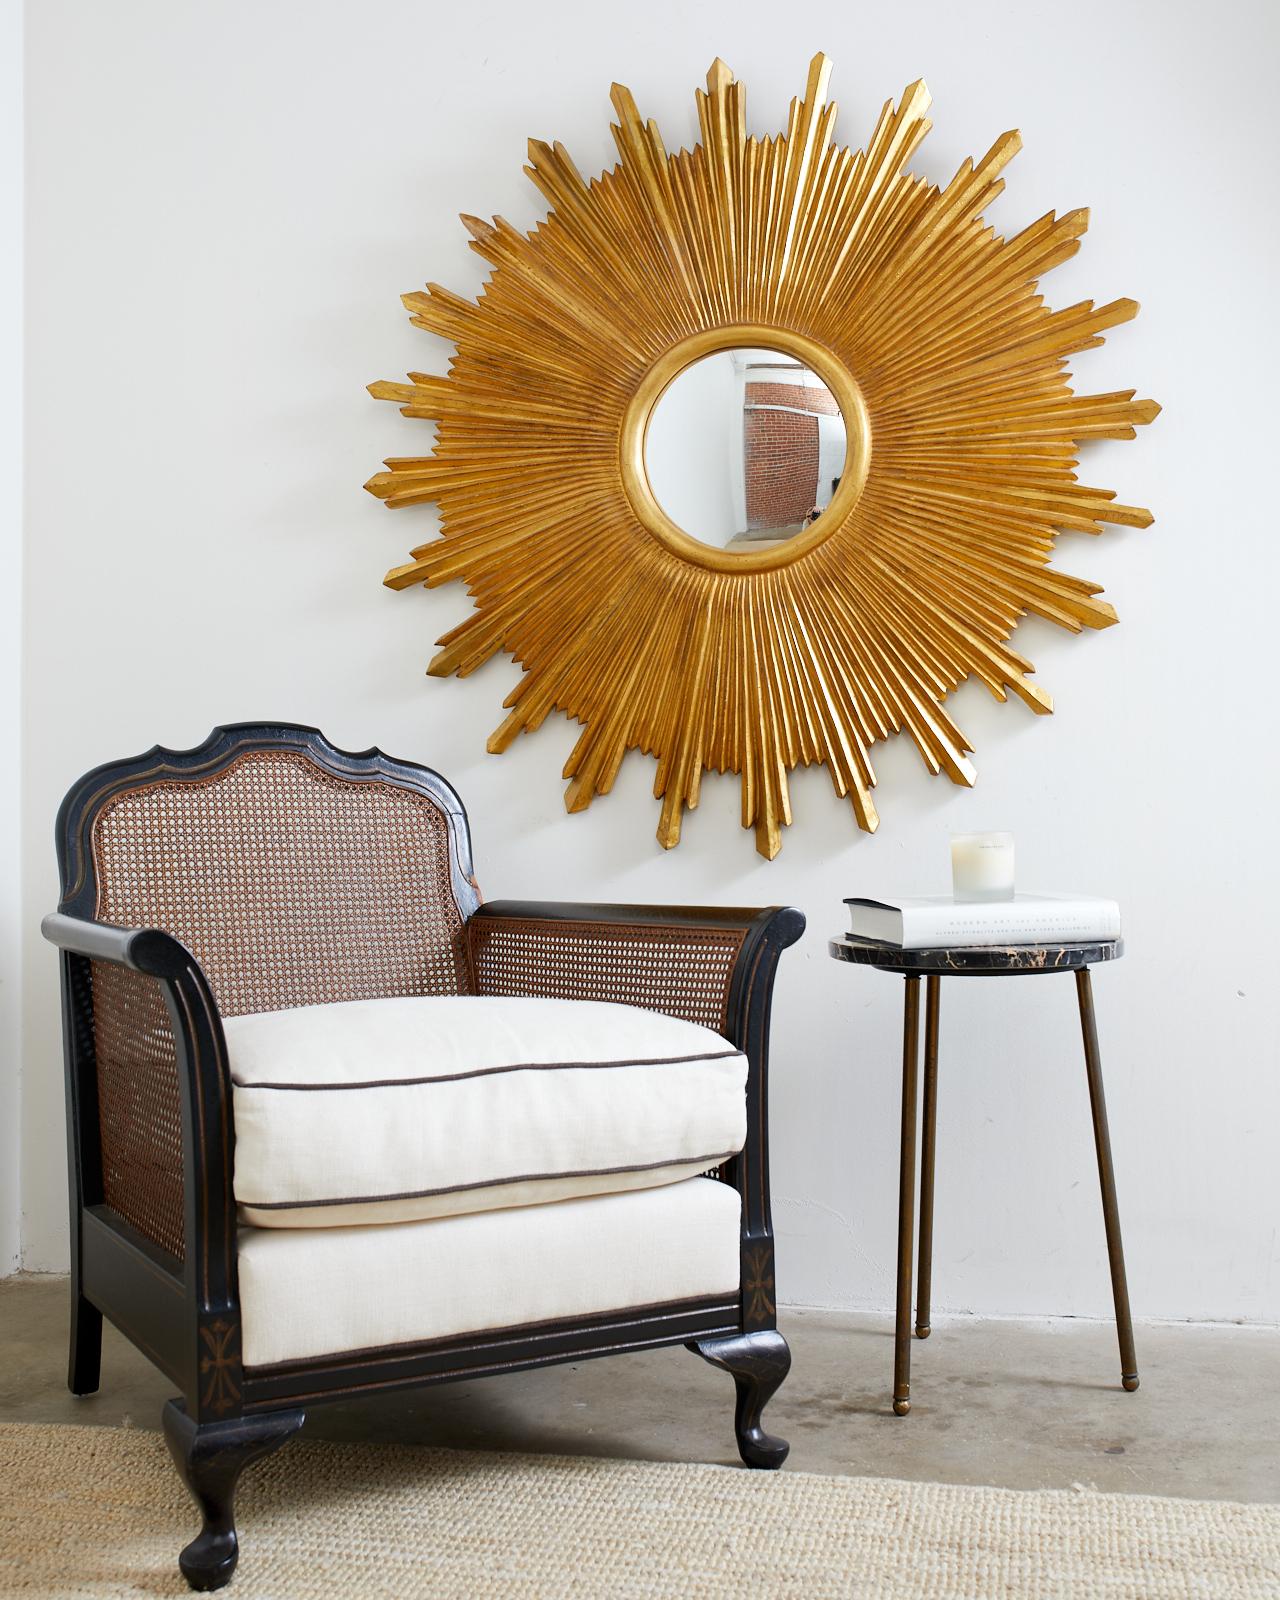 Grand miroir dramatique en bois doré, fait à la main, avec un verre convexe. Fabriqué par Carvers Guild, il présente un cadre sculpté avec des facettes angulaires recouvertes de feuilles d'or. D'un diamètre de plus d'un mètre, il attire l'attention